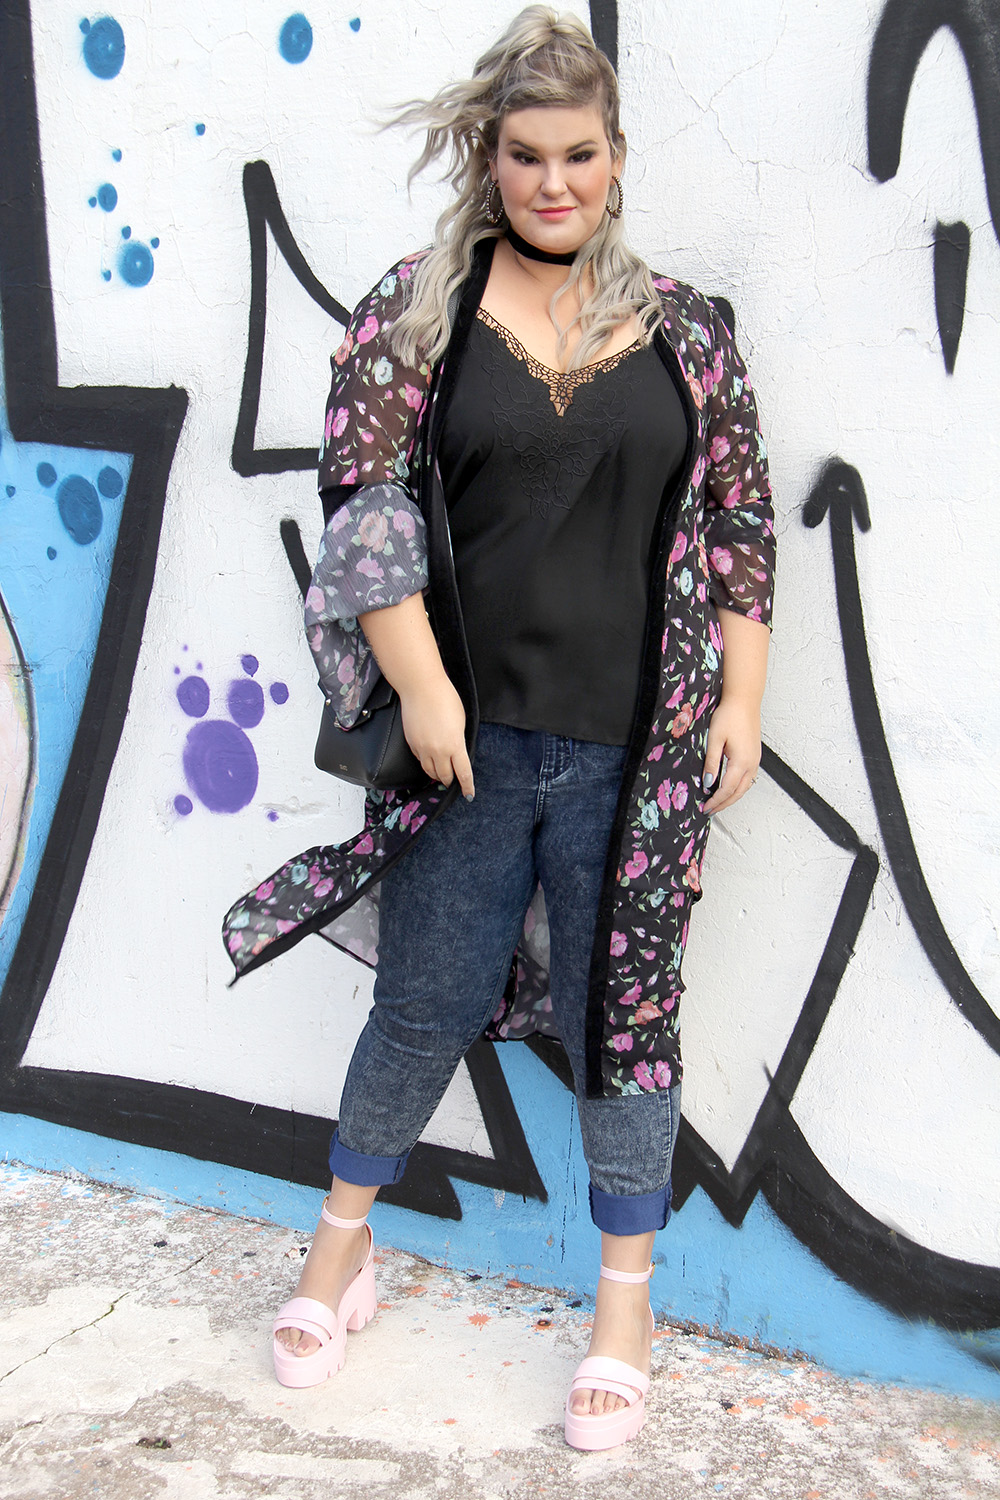 Sandália Spice Petite Jolie em look do dia com jeans e kimono longo